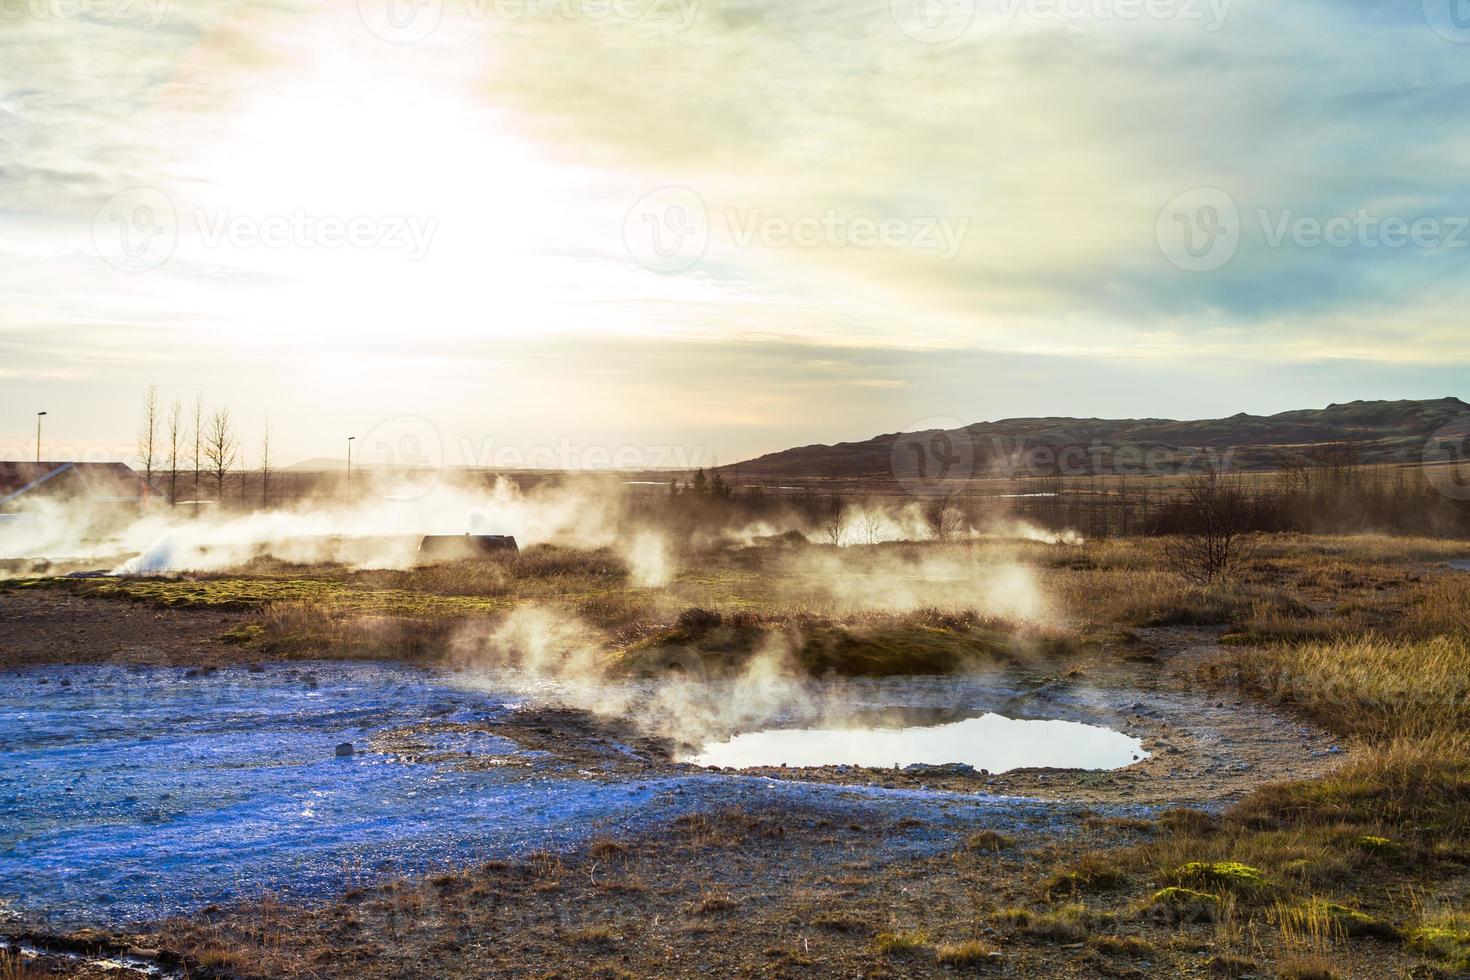 strokkur, uno de los géiseres más famosos ubicado en un área geotérmica junto al río hvita en la parte suroeste de islandia, entra en erupción una vez cada 6-10 minutos foto